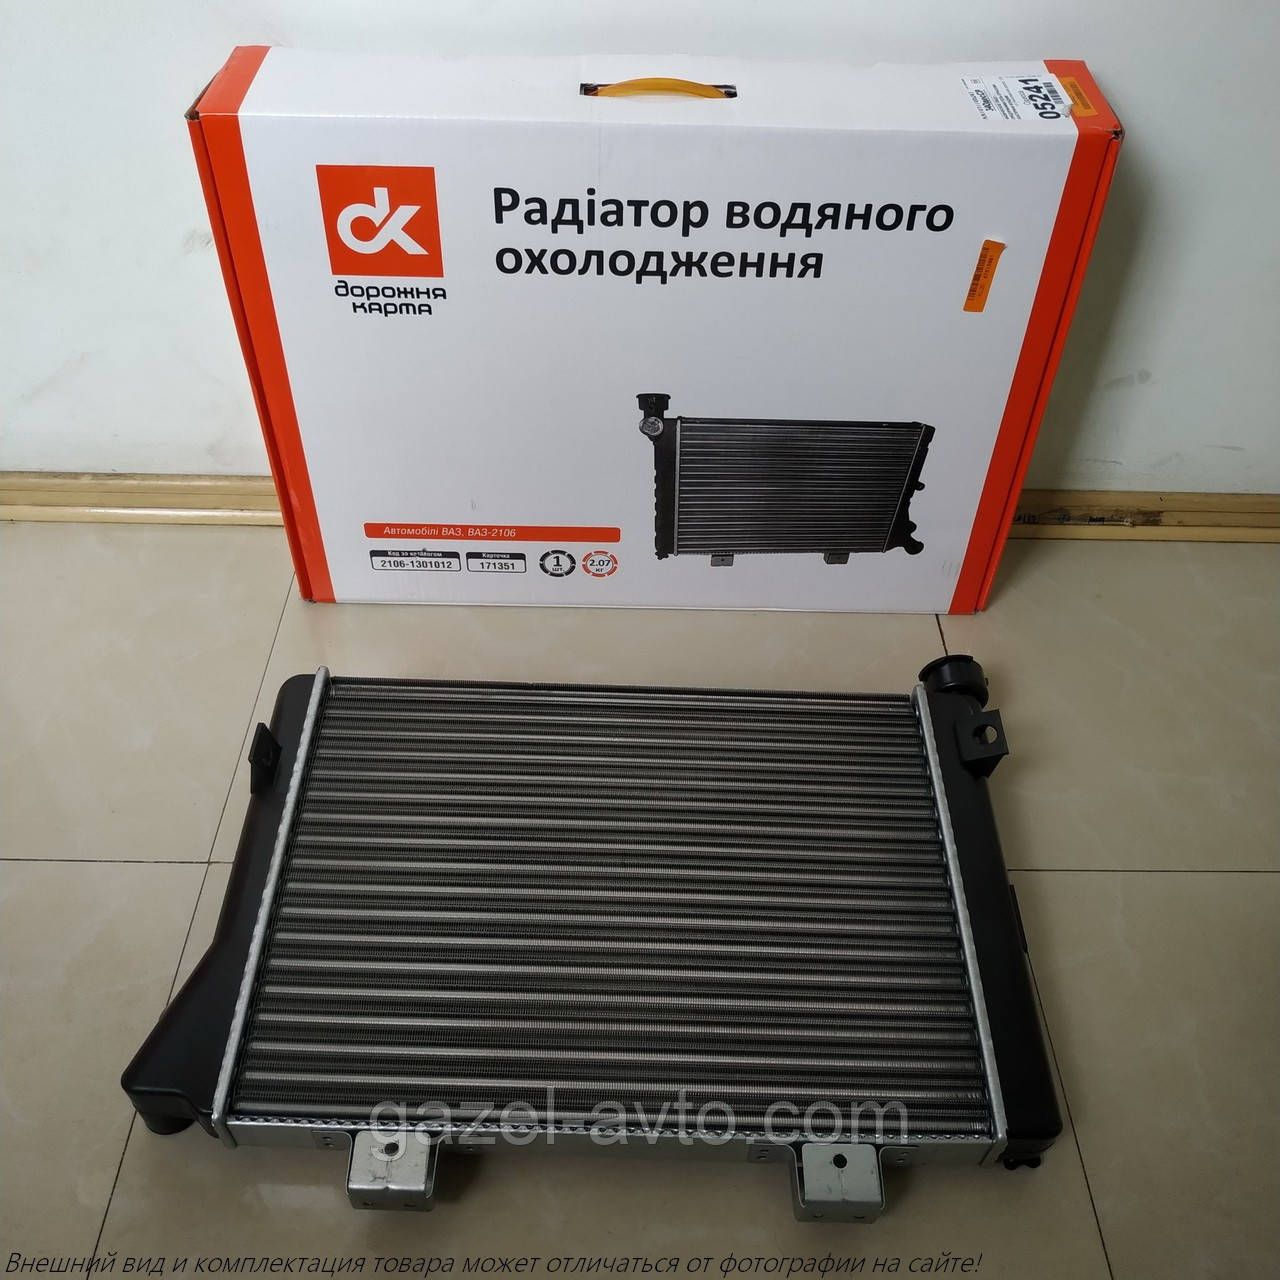 Радиатор водяного охлаждения ВАЗ 2106 (пр-во ДК)